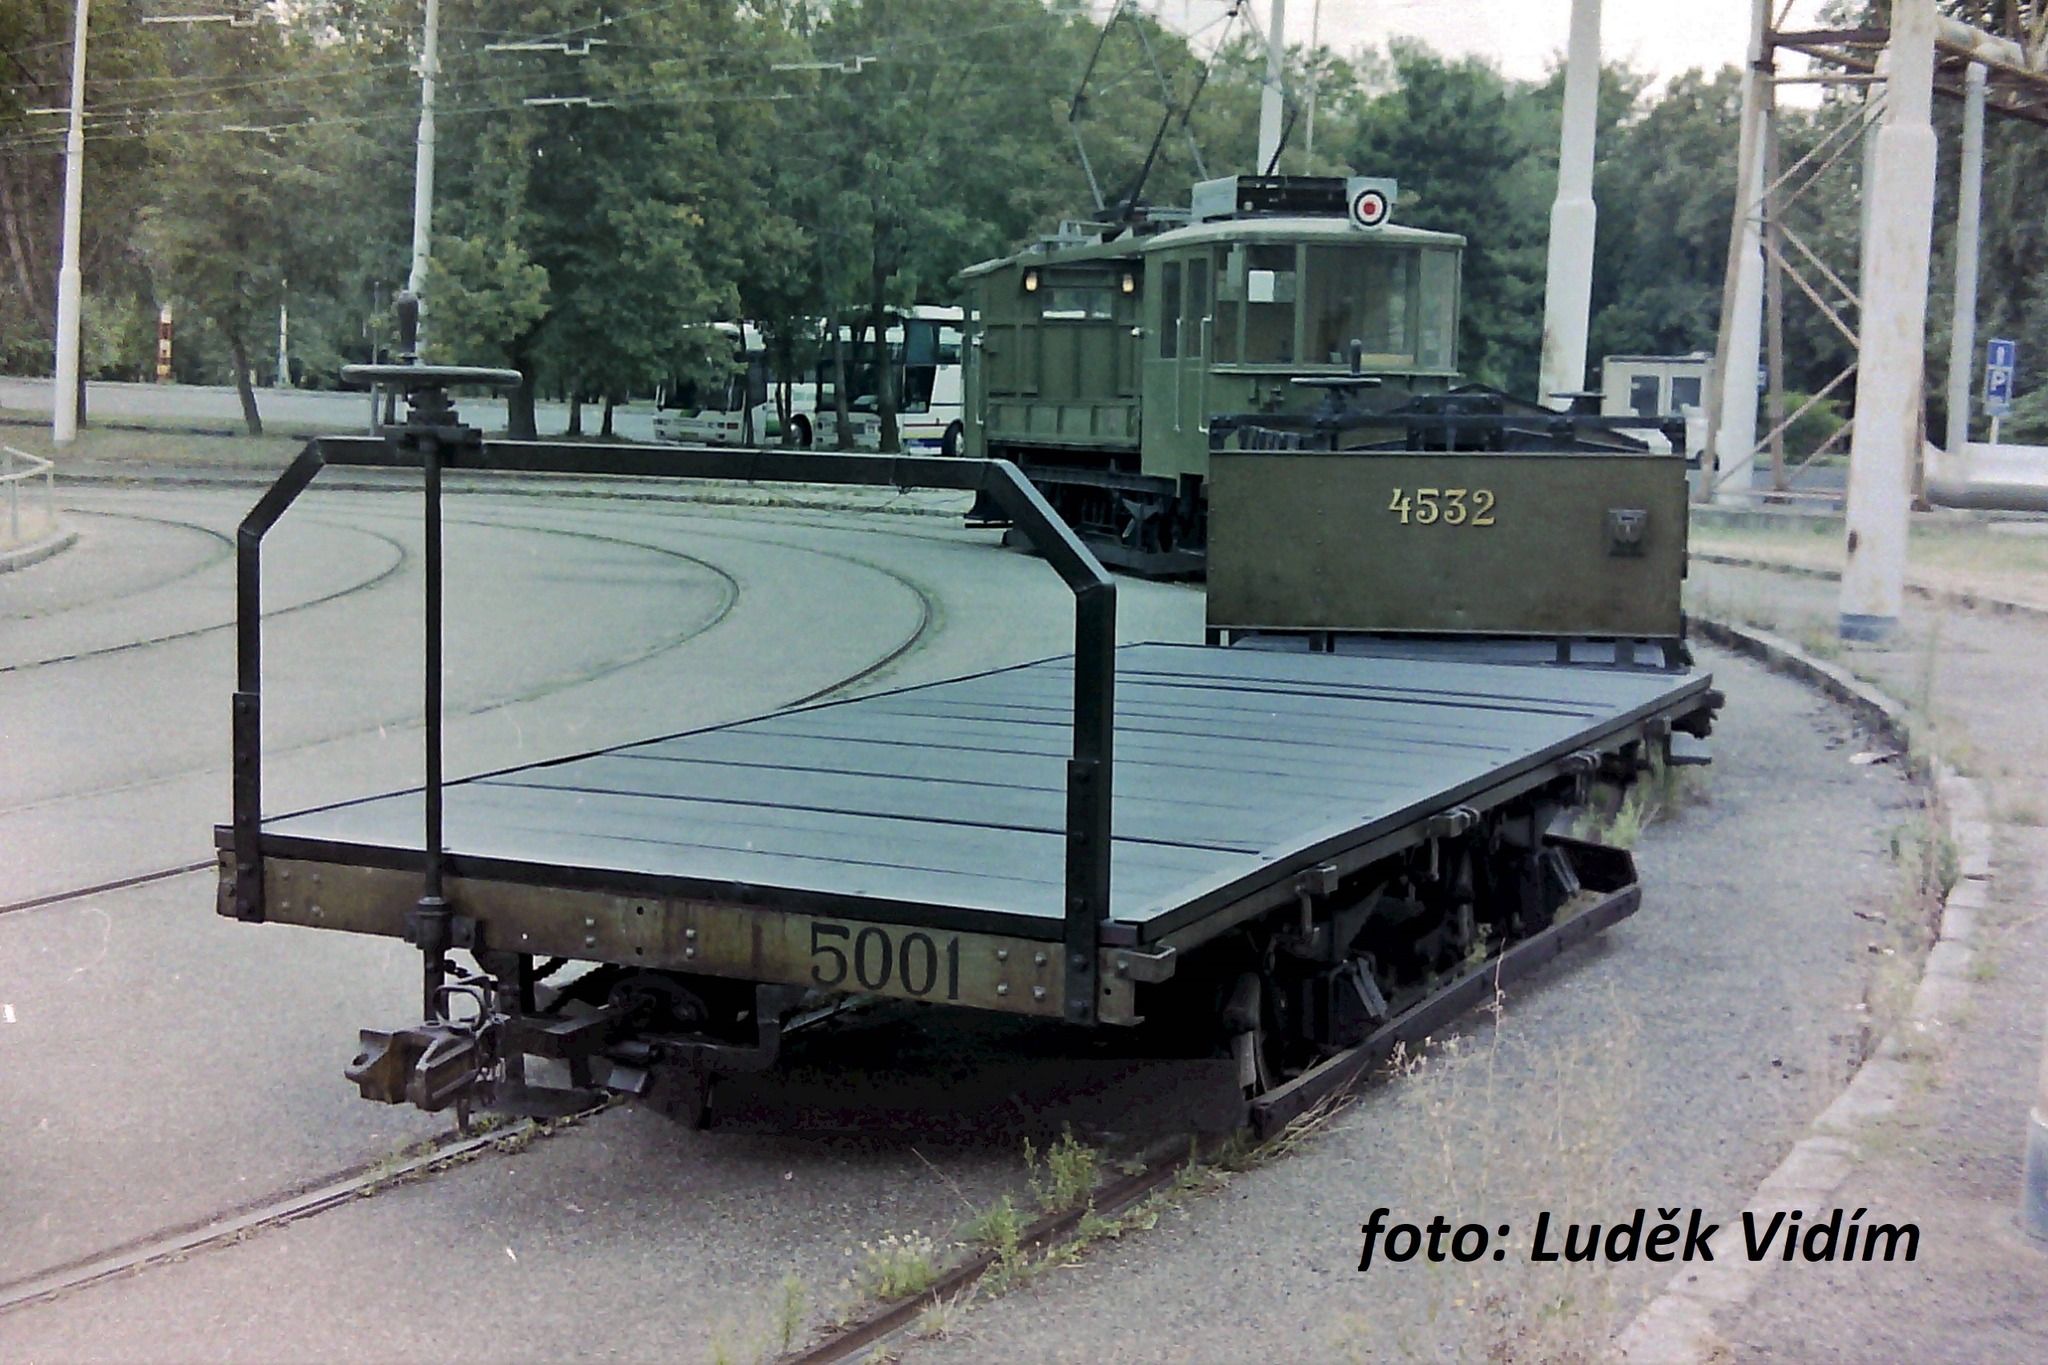 V podstatě nejstarší elektrickým vlekem v muzeu je nákladní vůz 5001. K vozu existovaly ještě dřevěné odnímatelné bočnice. Vůz z roku 1898 byl vyfocen ve smyčce Špejchar.